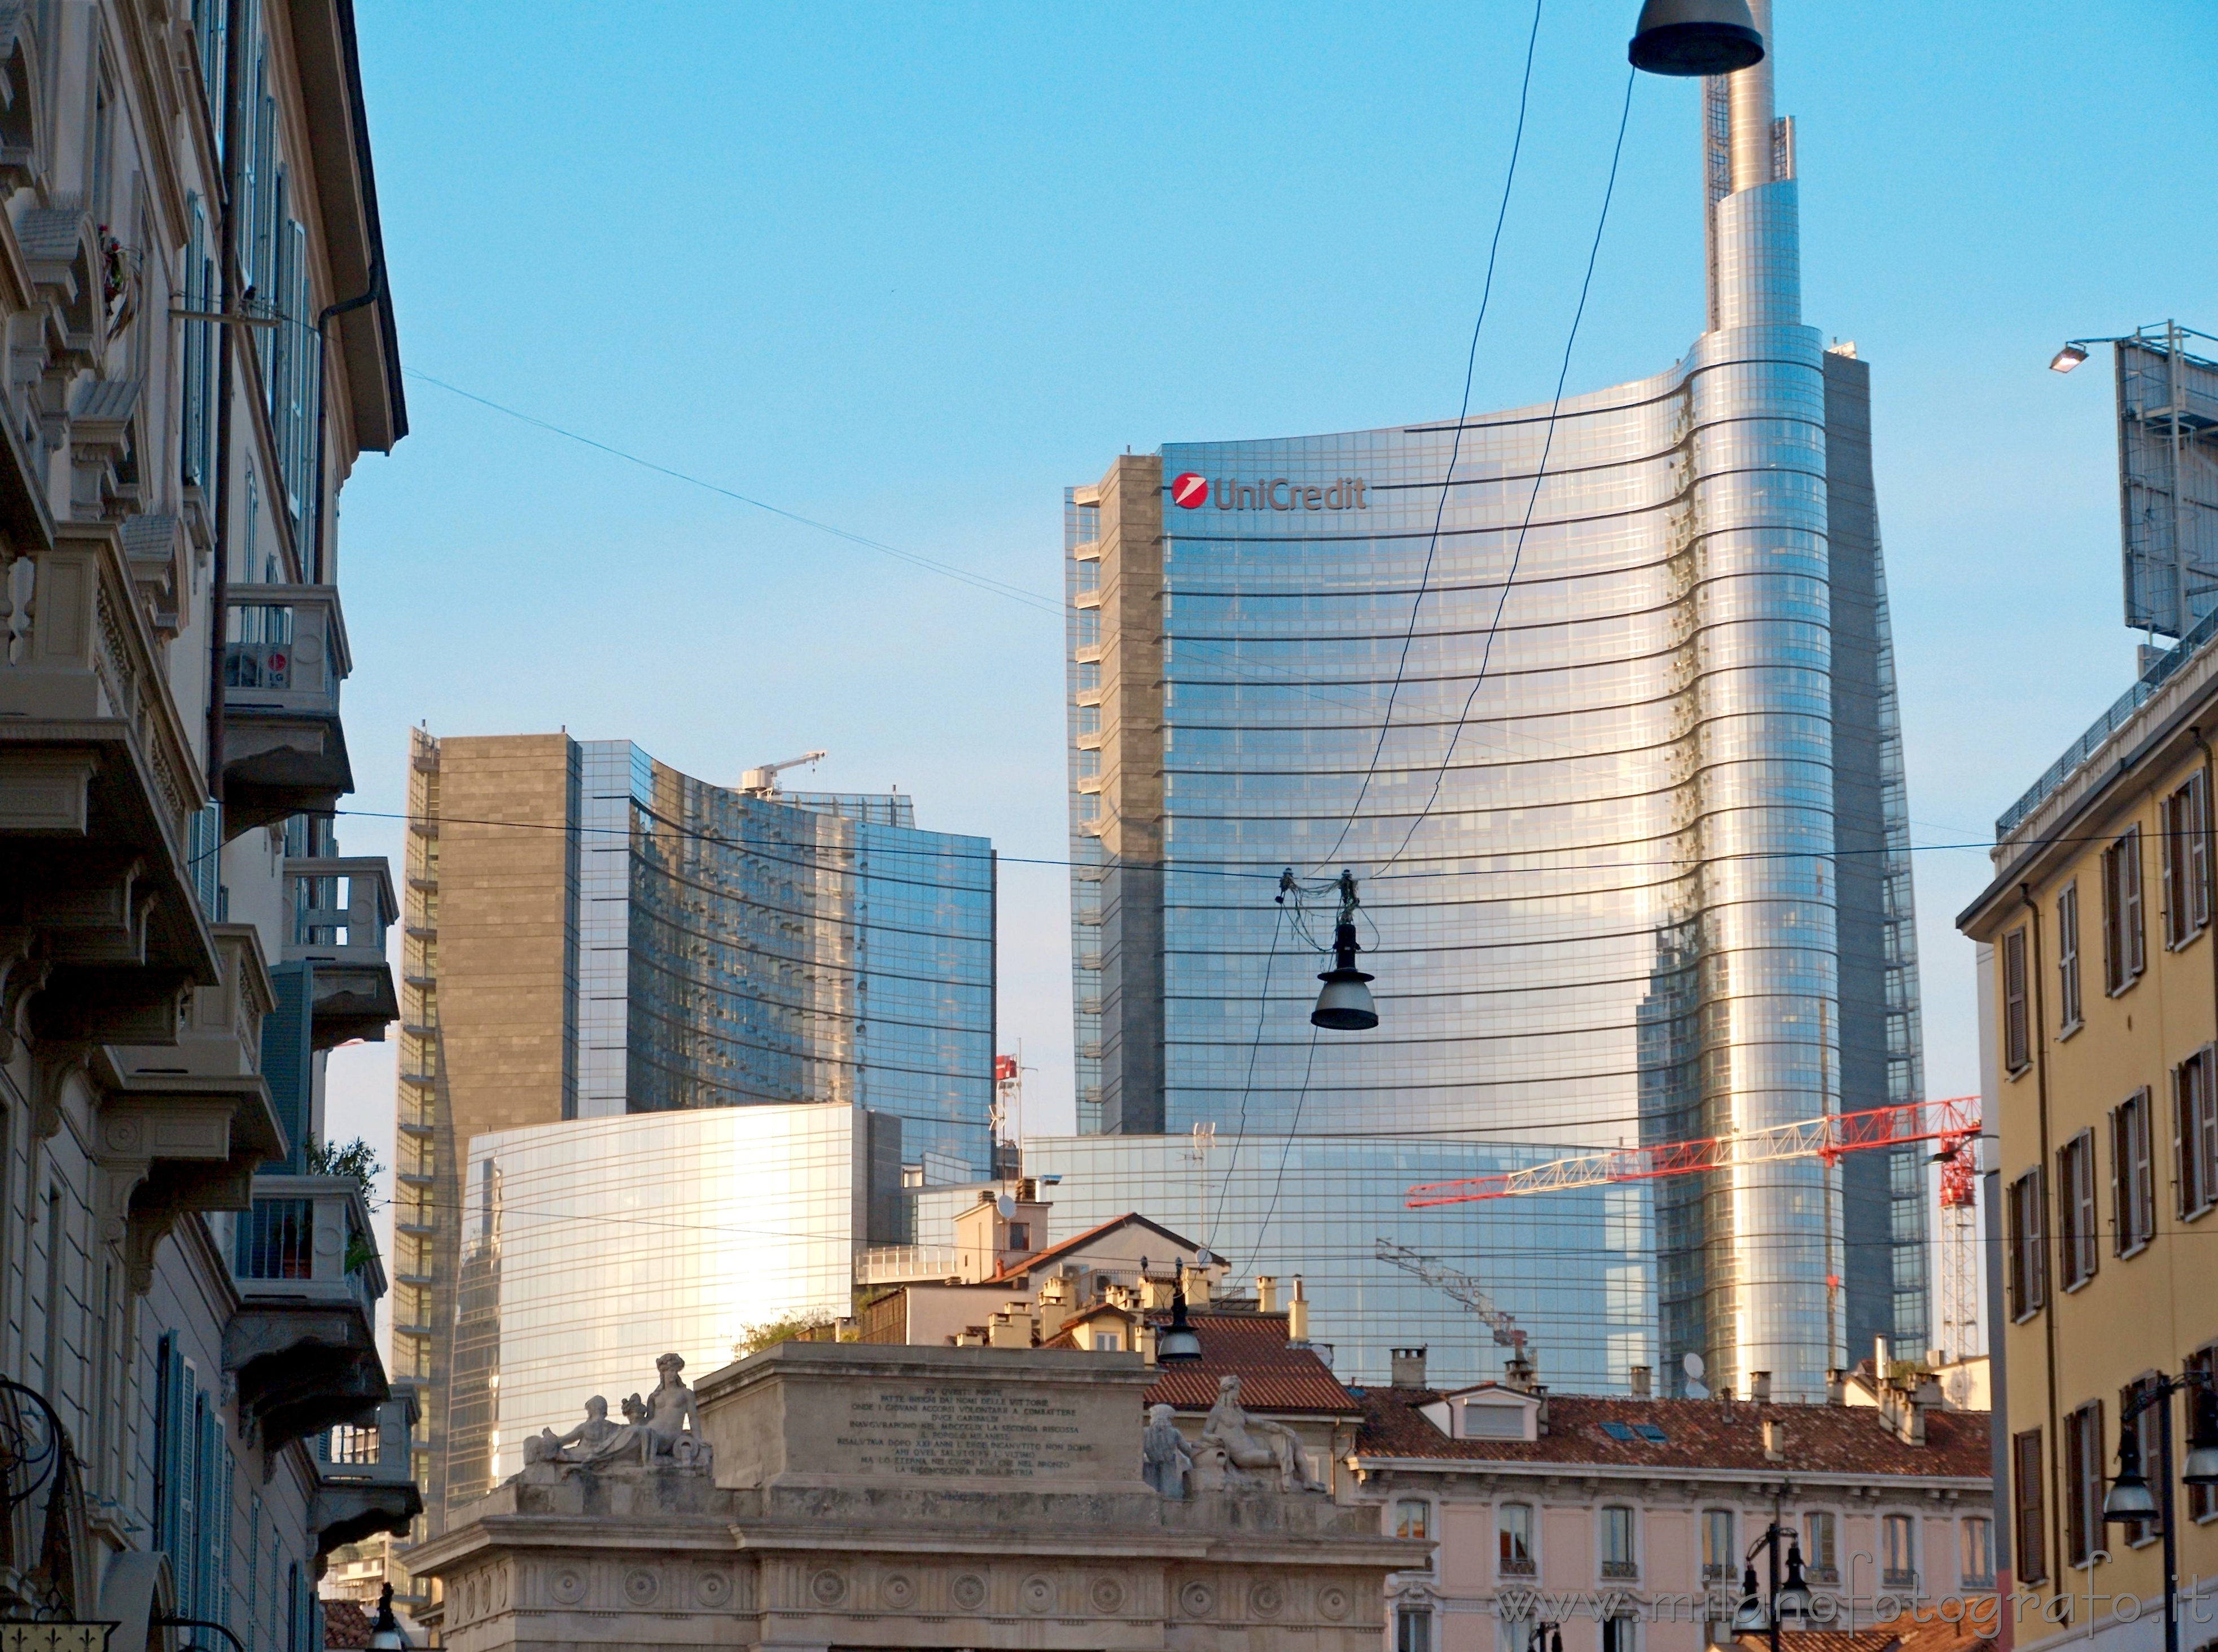 Milano: Unicredit Tower vista da corso Garibaldi - Milano